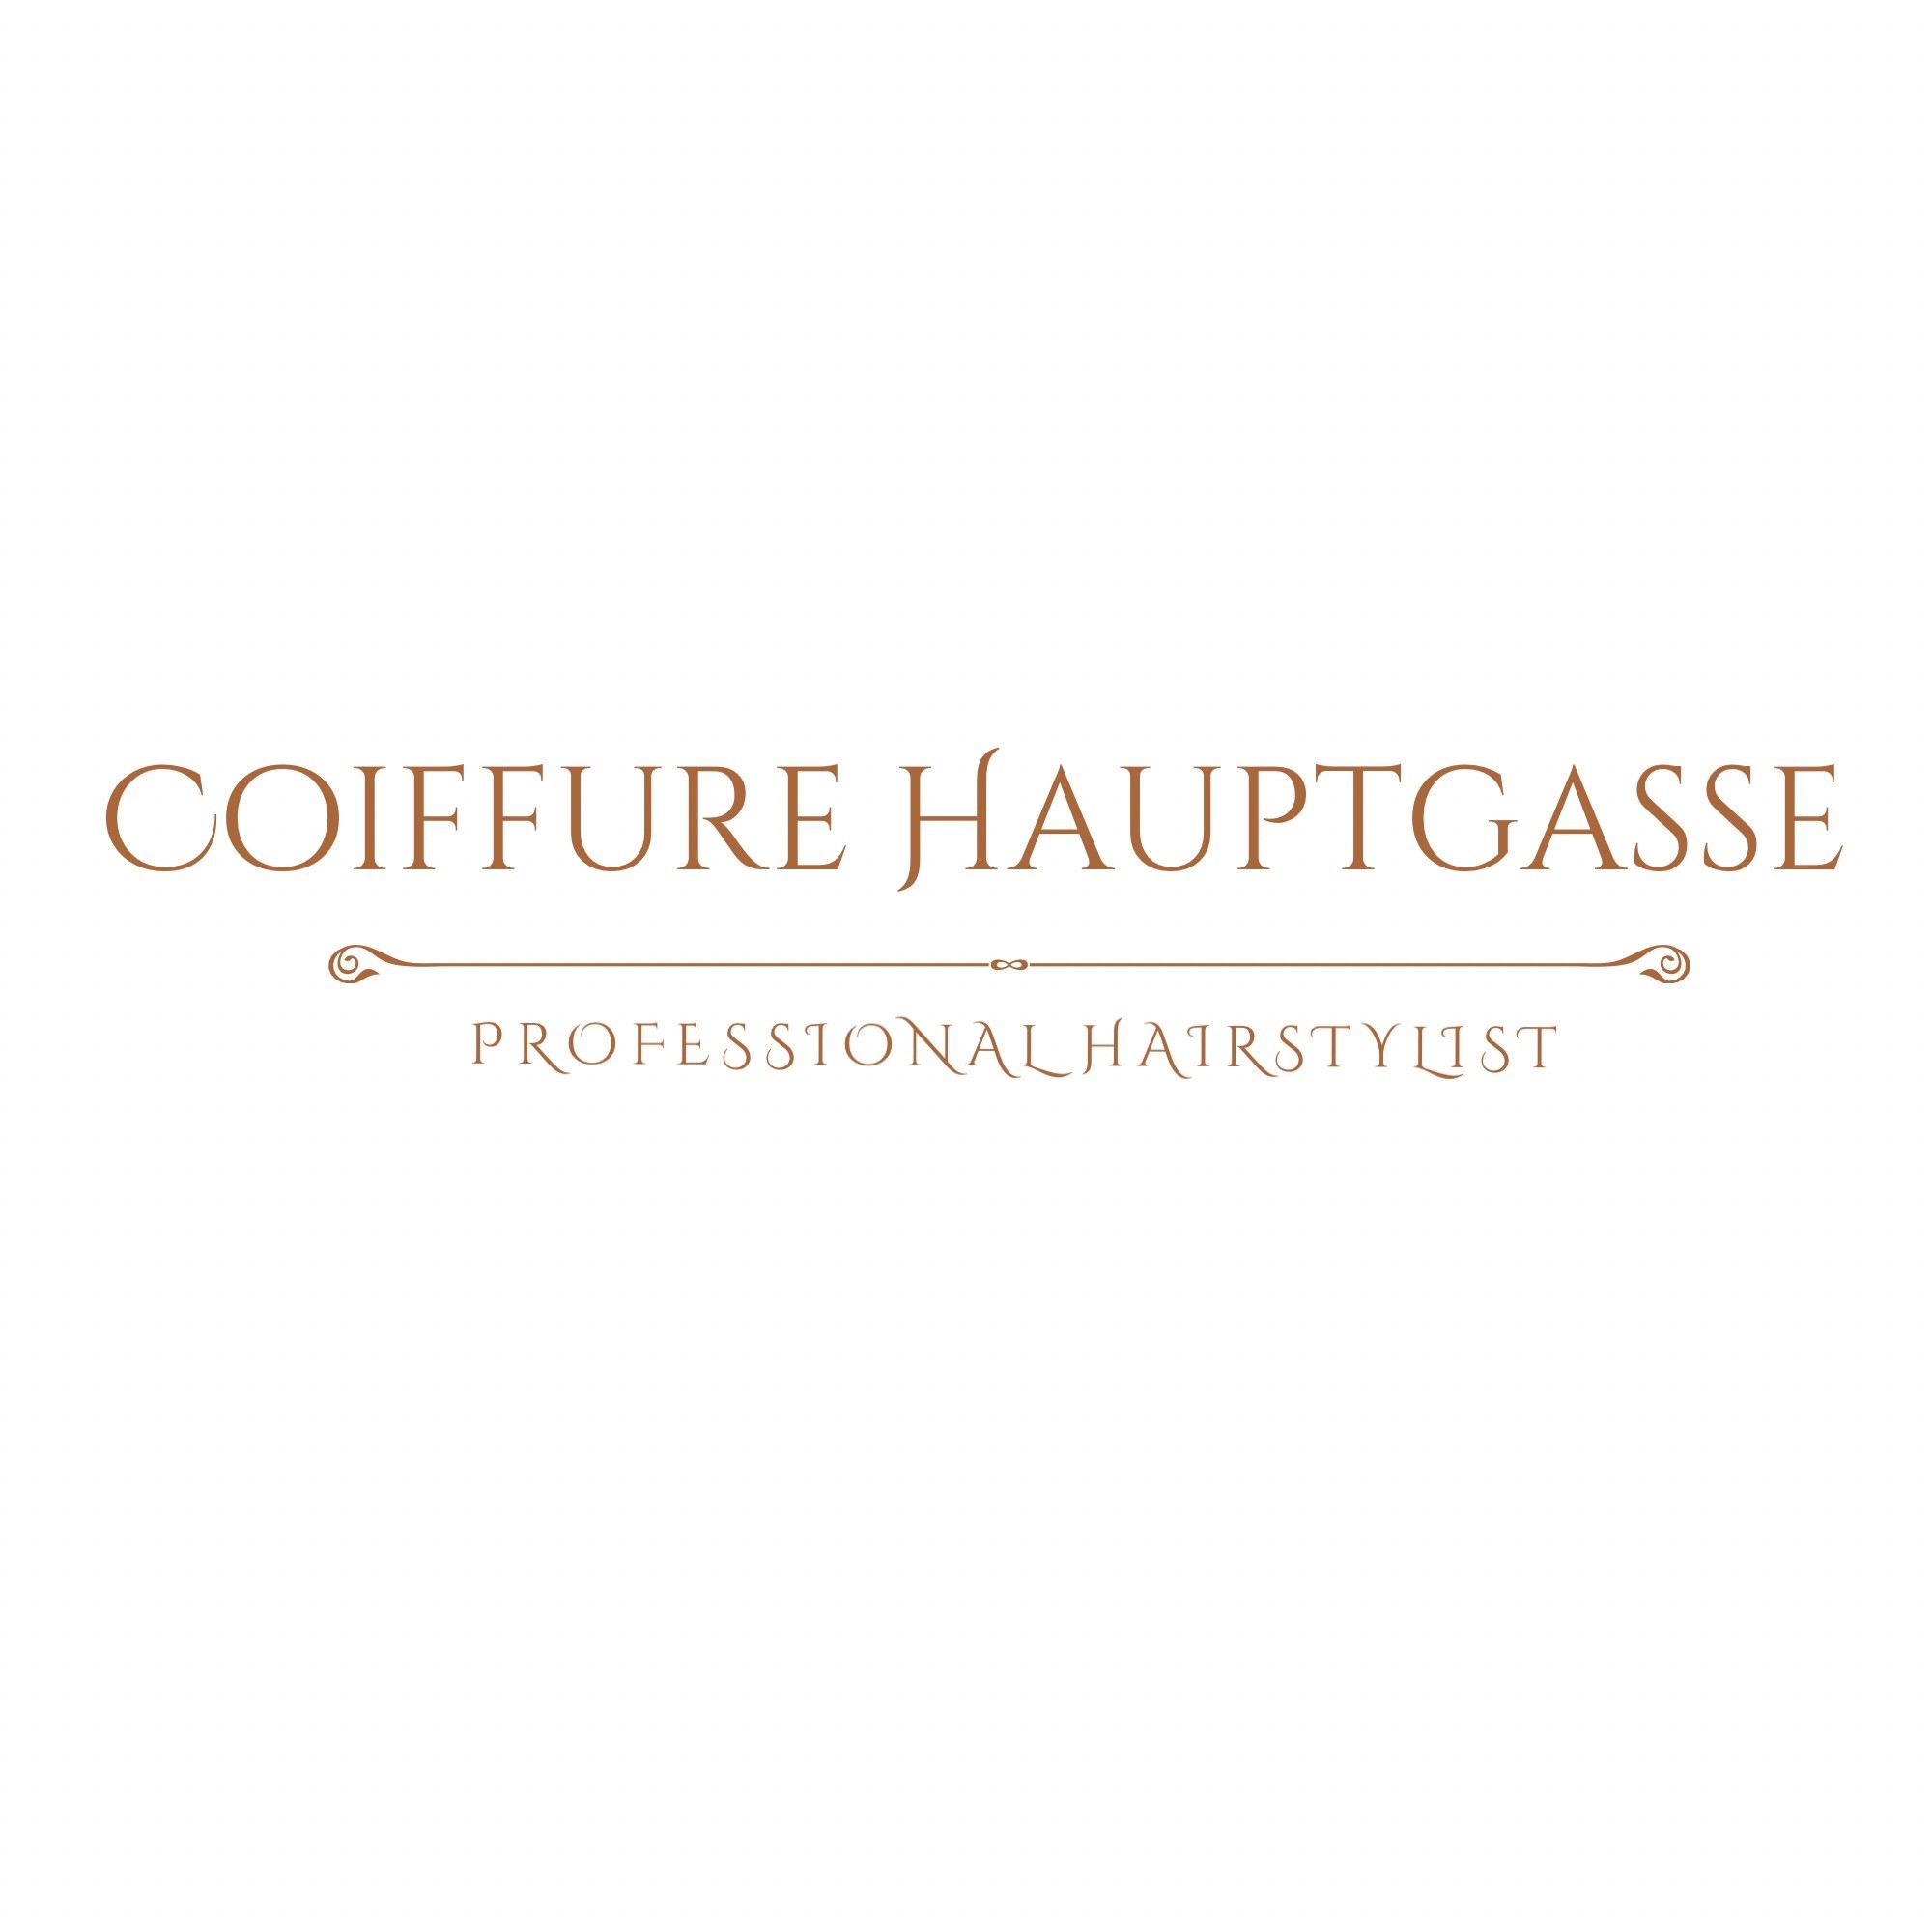 Coiffure Hauptgasse